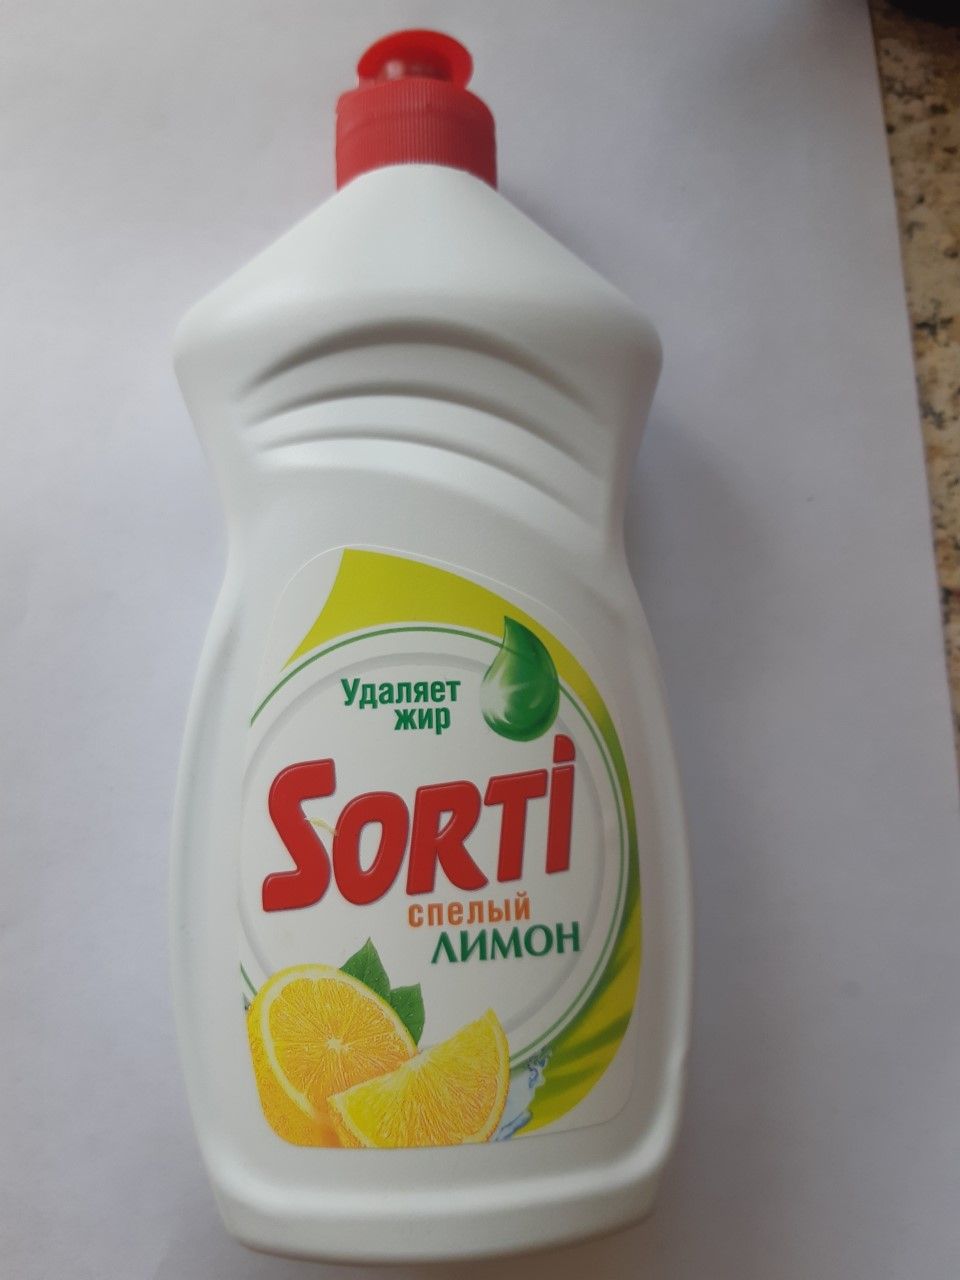 Отзыв про  для мытья посуды Sorti спелый лимон: 